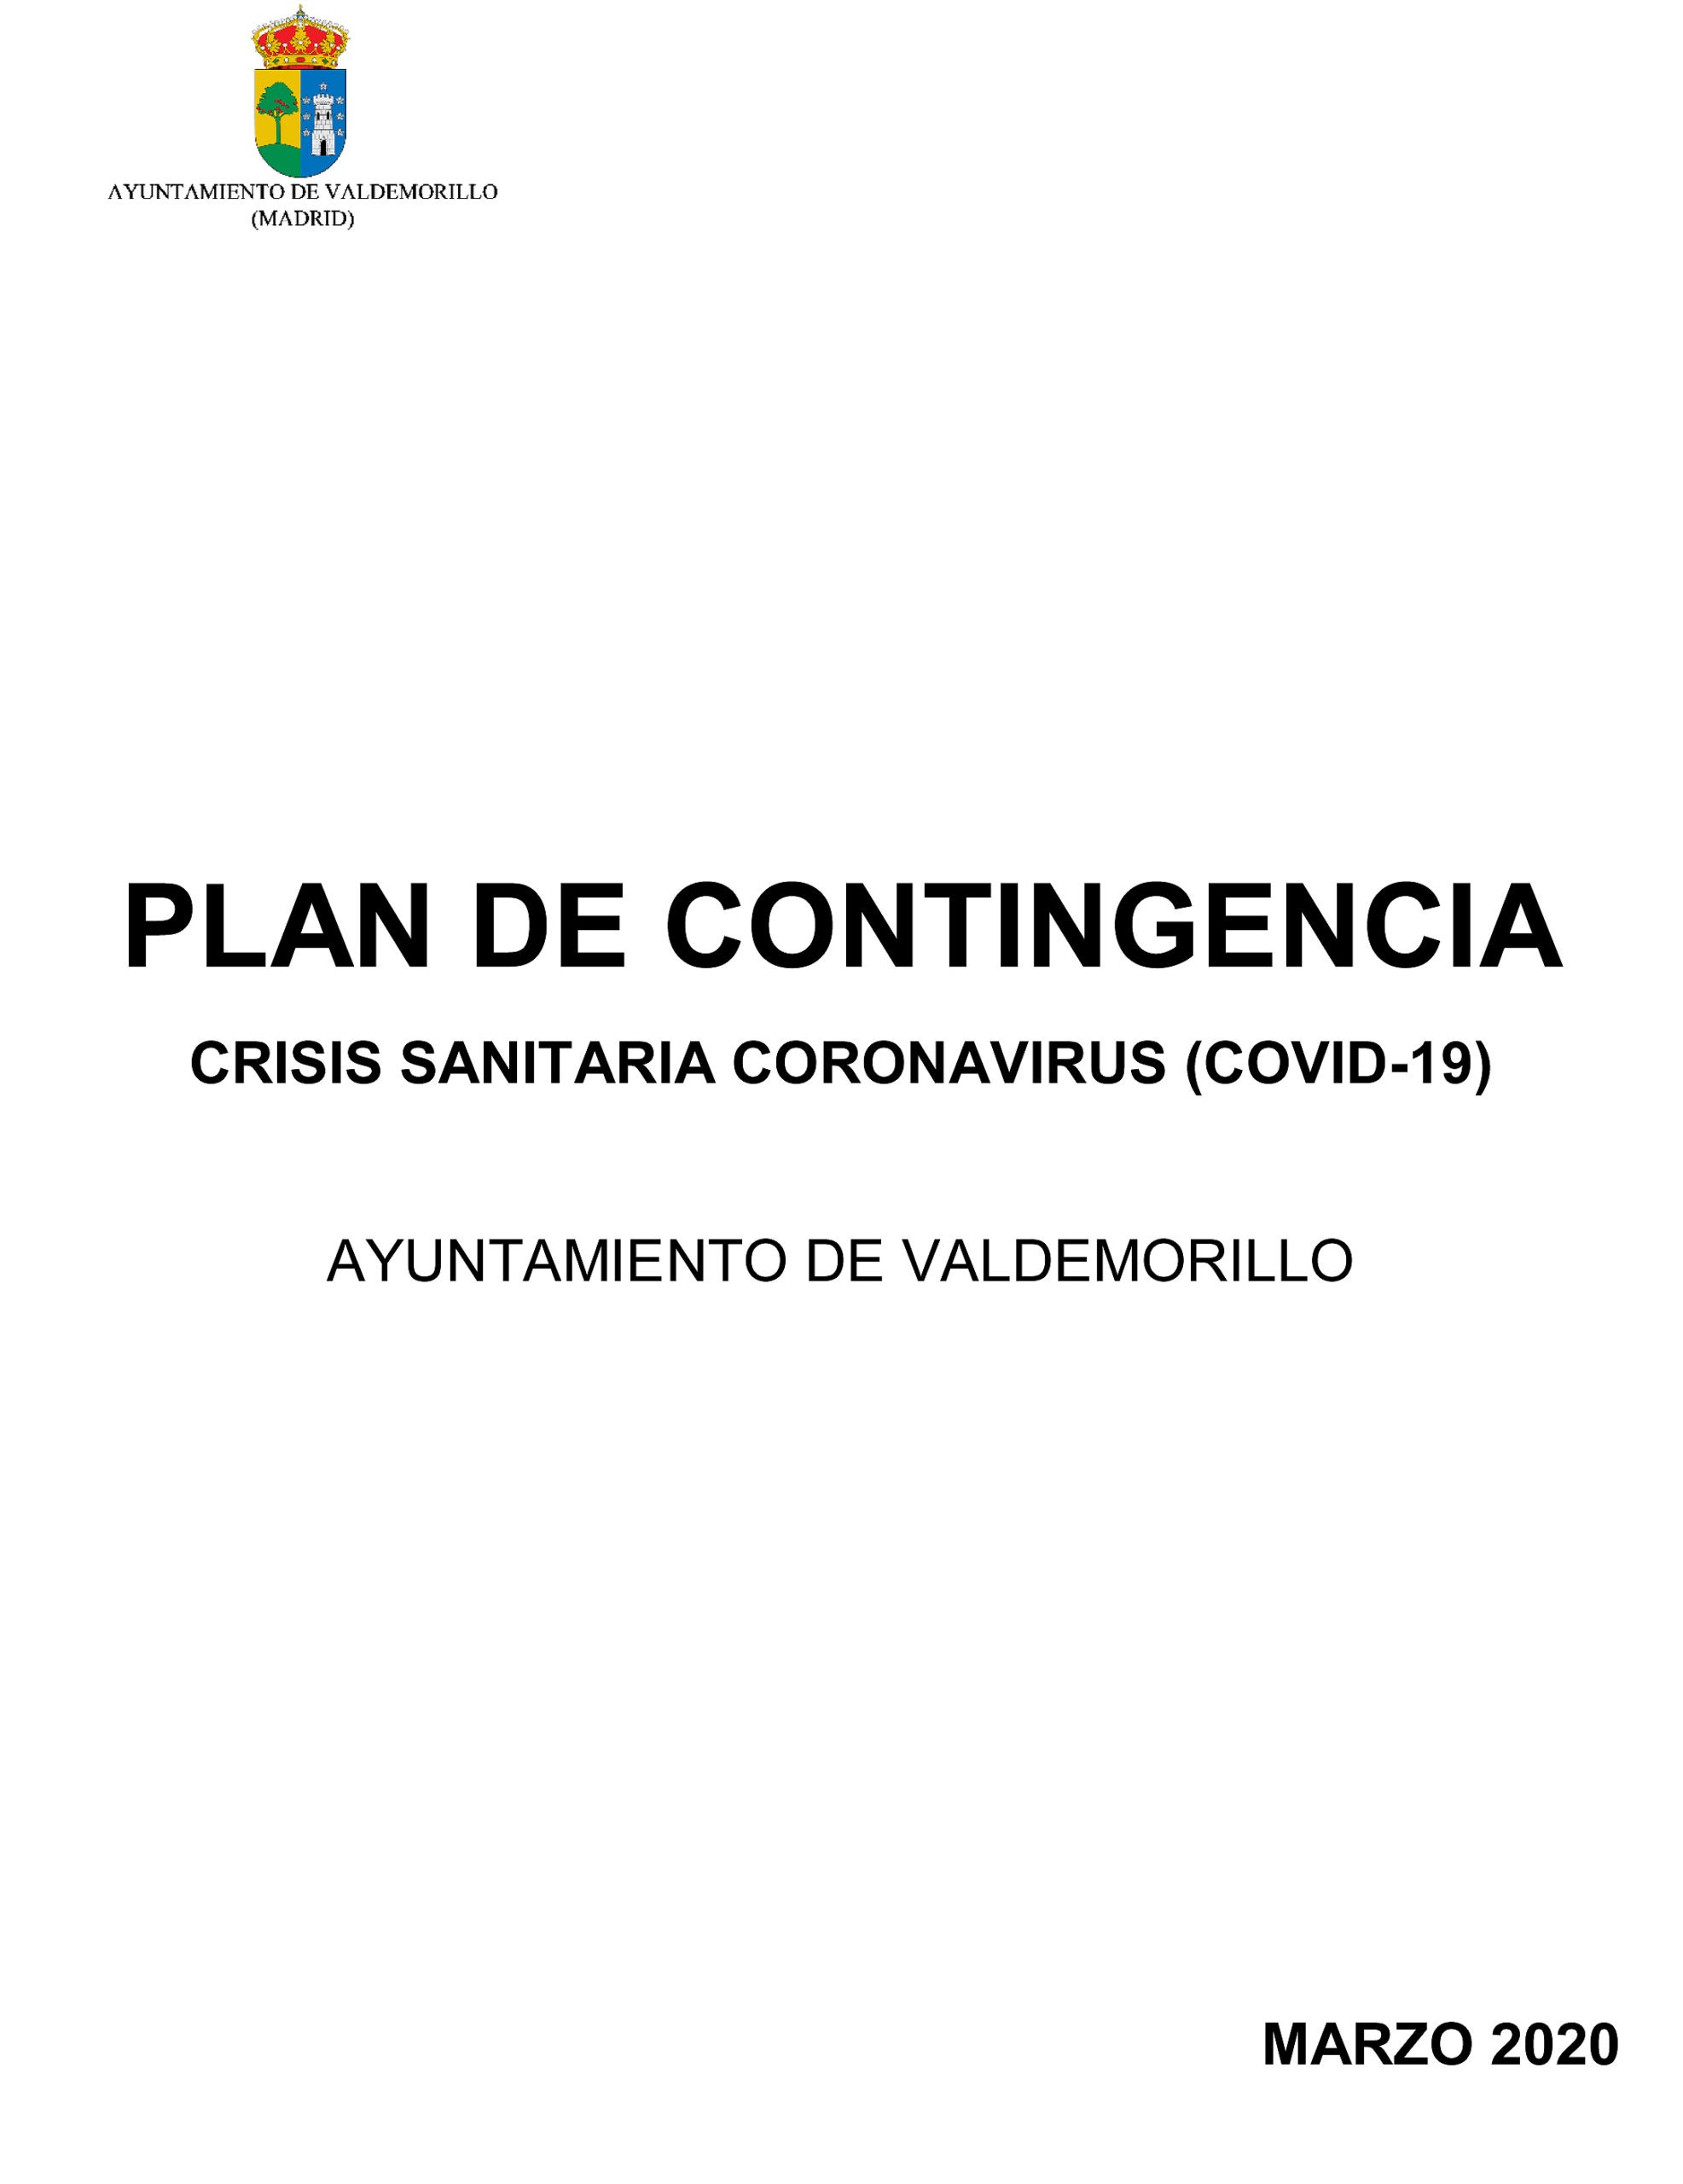 Aprobado el Plan de Contingencia  en Valdemorillo para atender a la crisis sanitaria del COVID-19